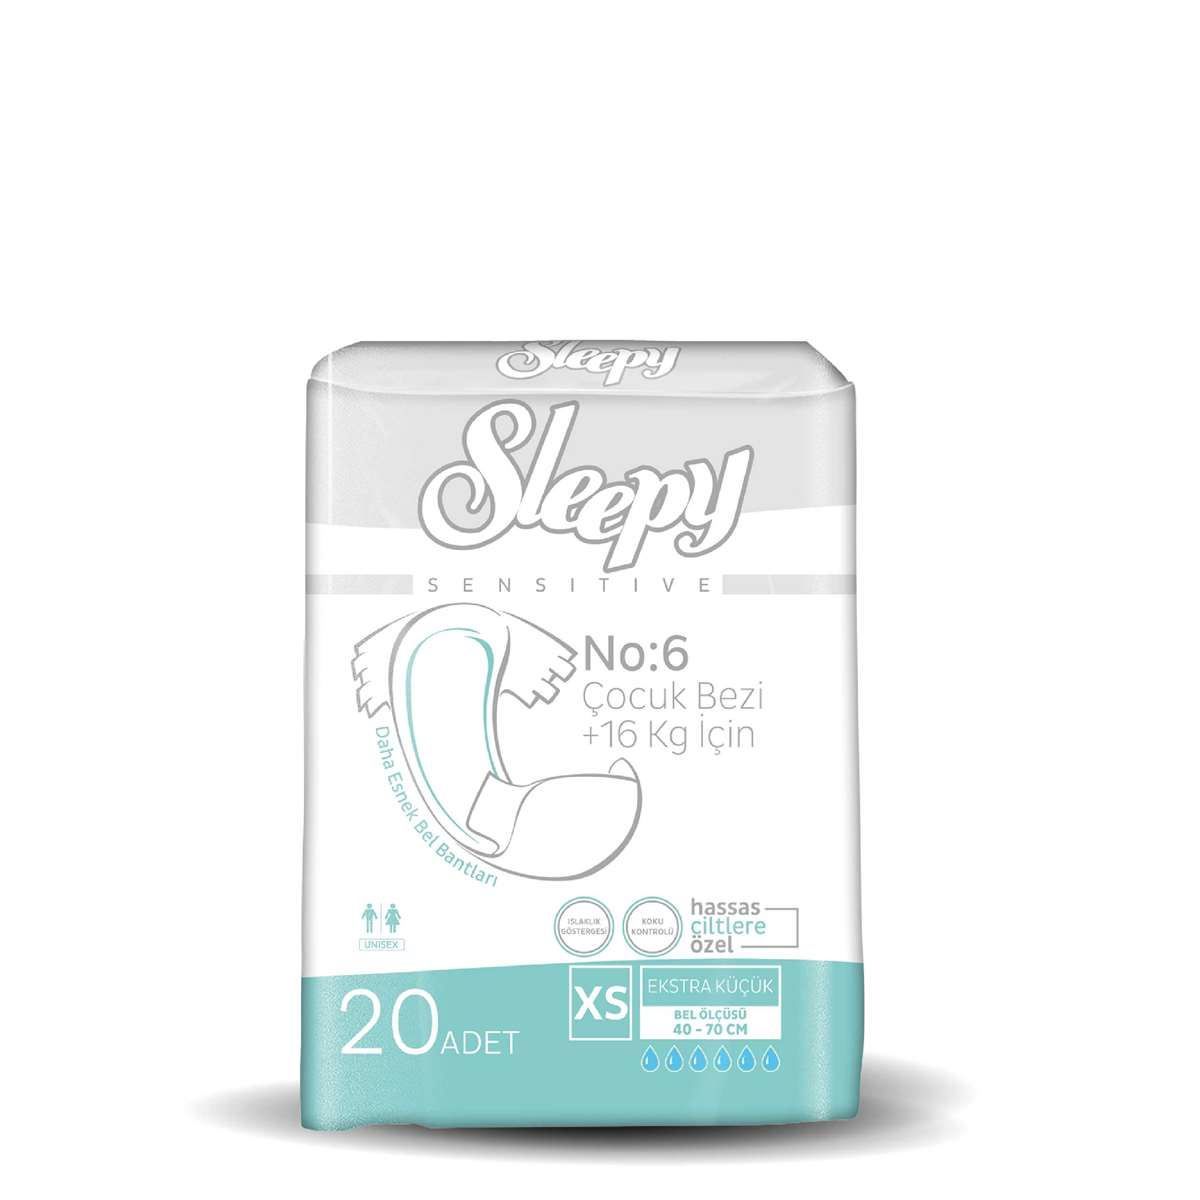 Sleepy Sensitive Belbantlı 16 Kg + Hasta Bezi Ekstra Küçük 20 Adet